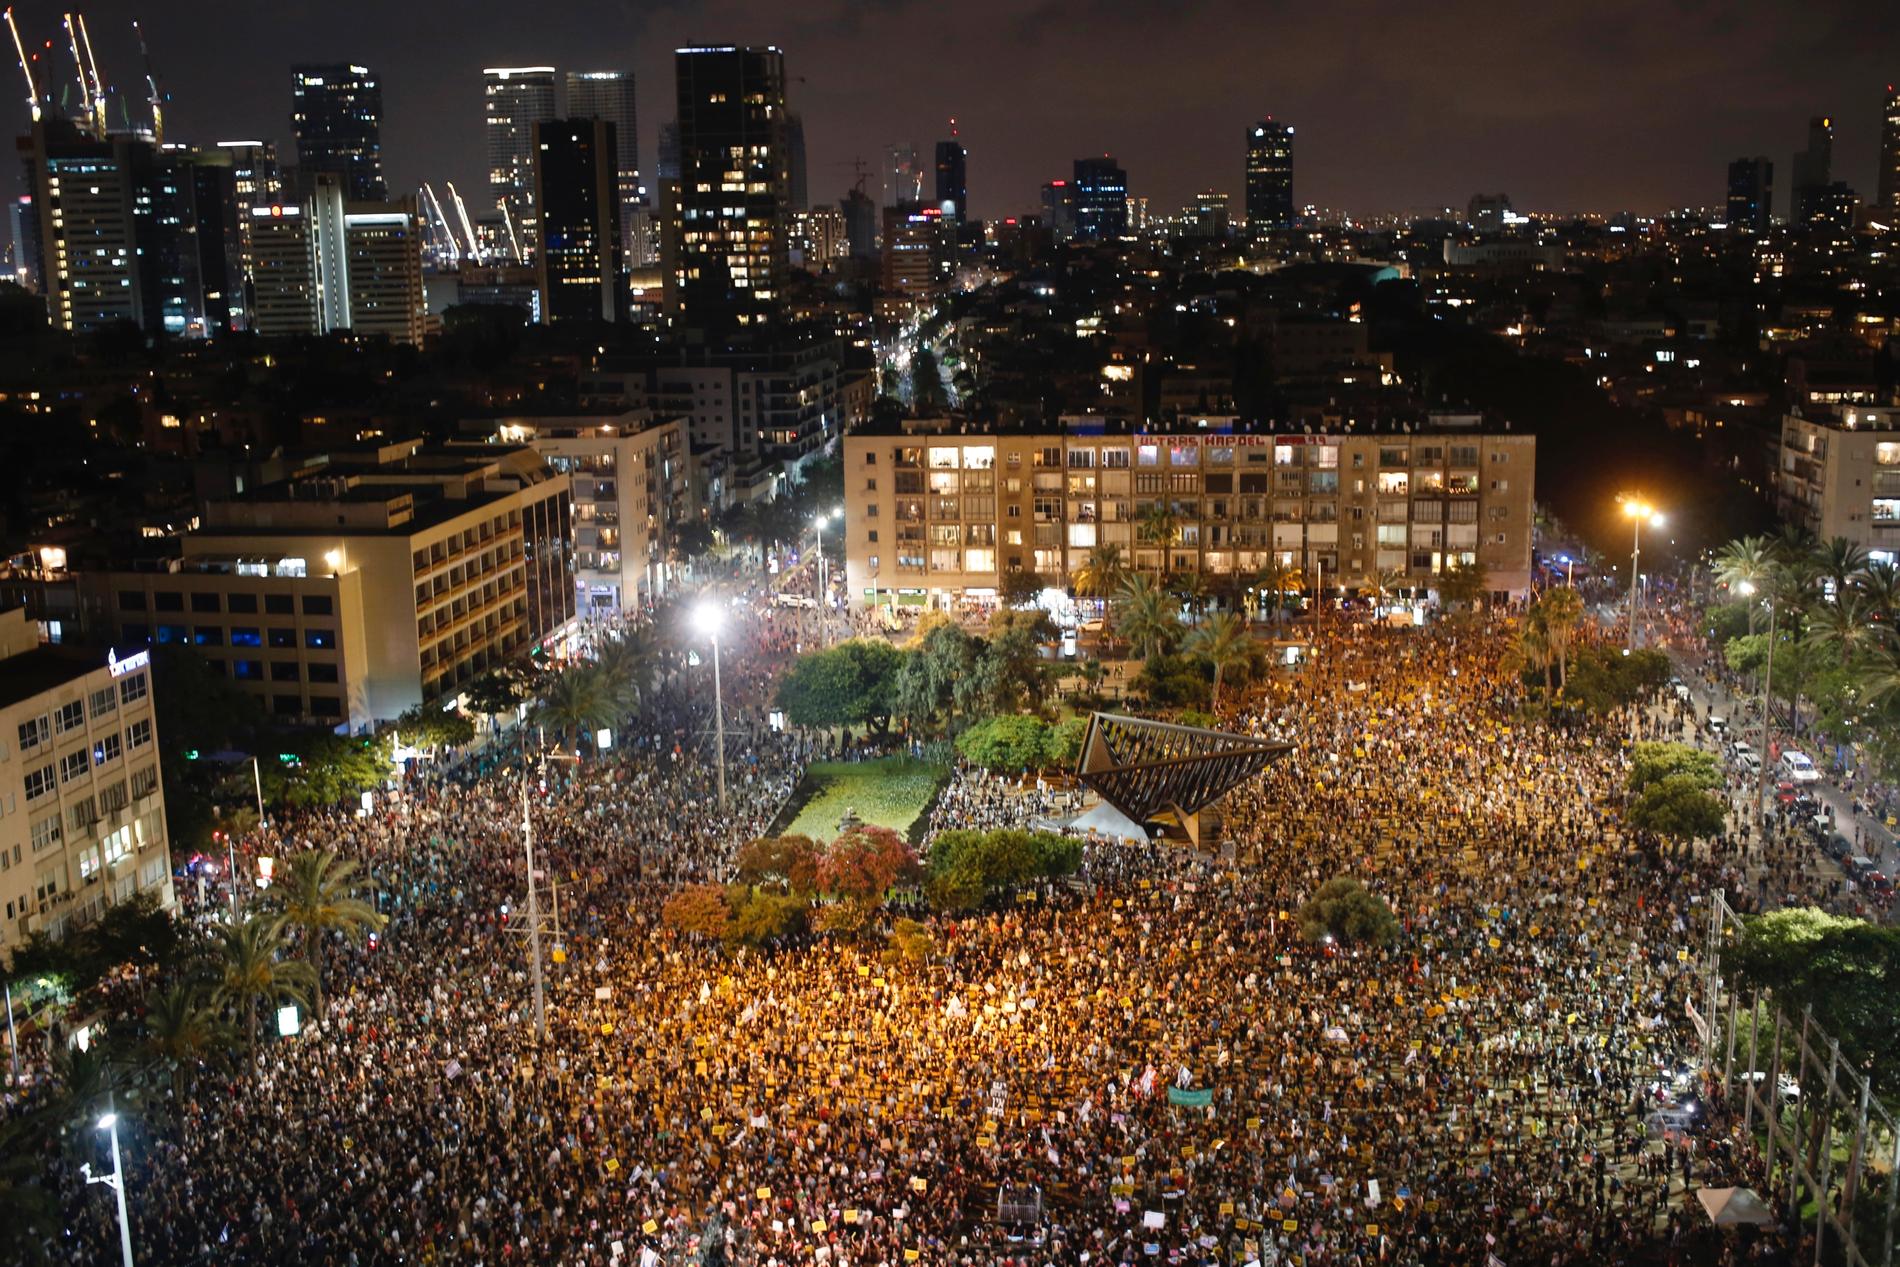 Tiotusentals demonstranter har samlats i Israels största stad Tel Aviv för att protestera mot regeringen och dess hantering av coronakrisen.